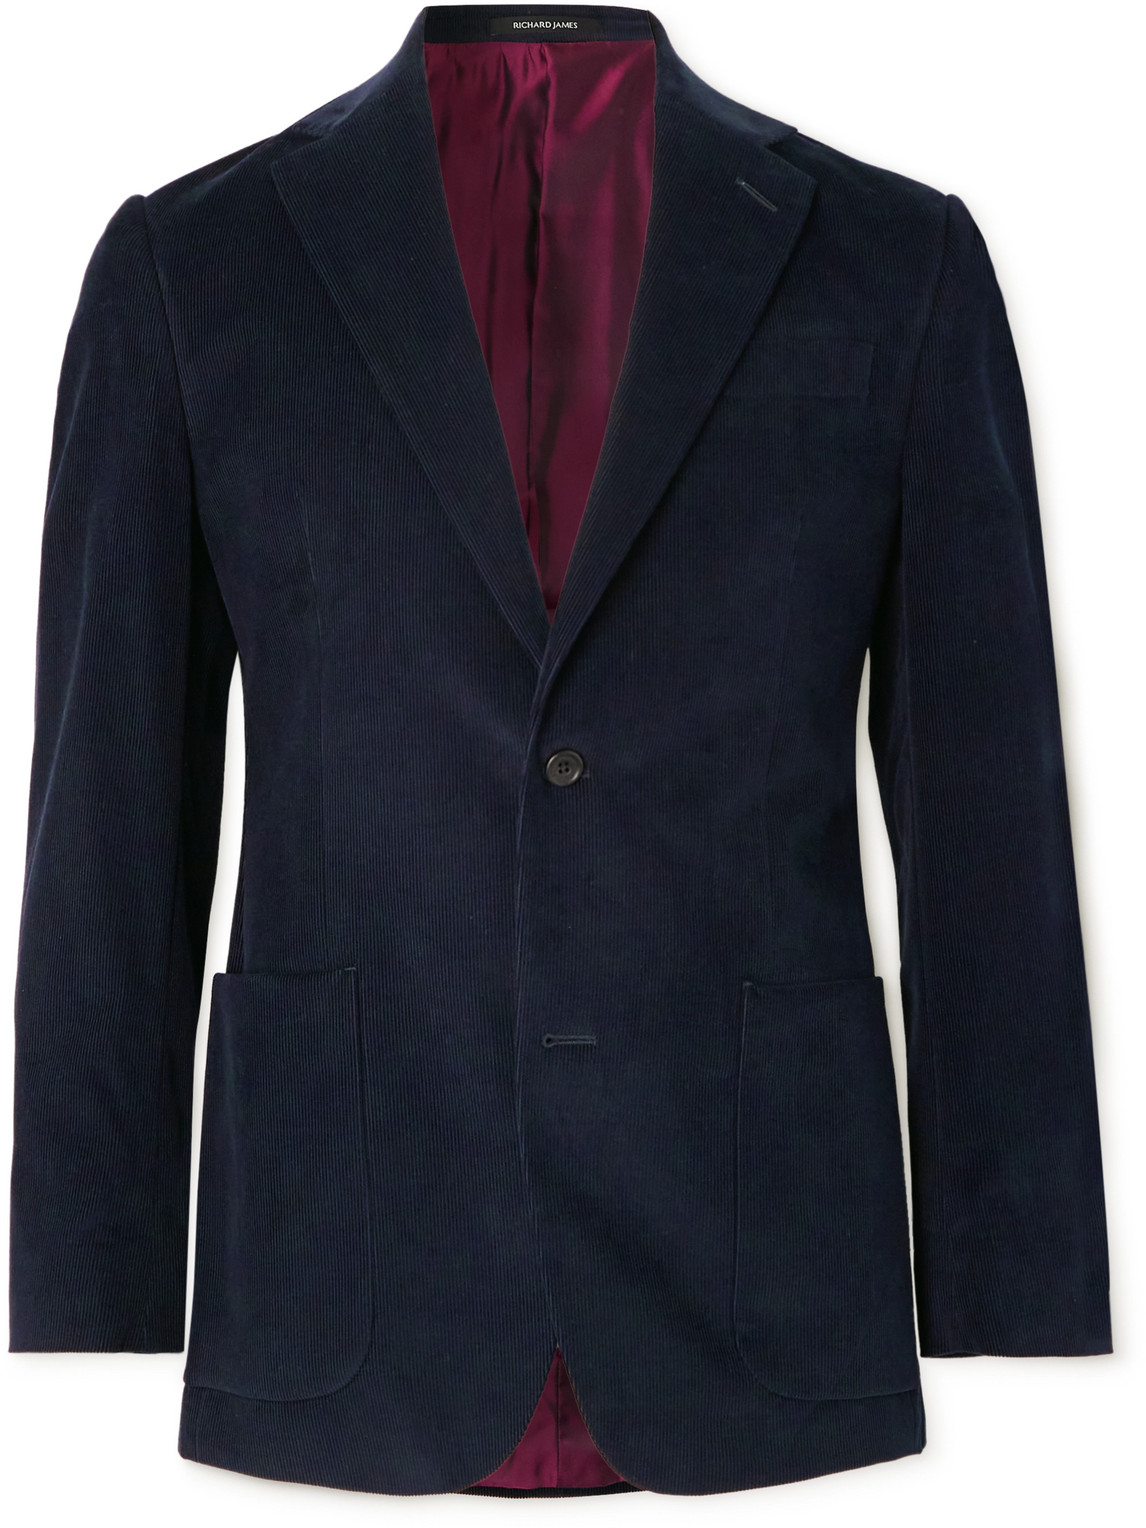 Slim-Fit Cotton-Needlecord Suit Jacket